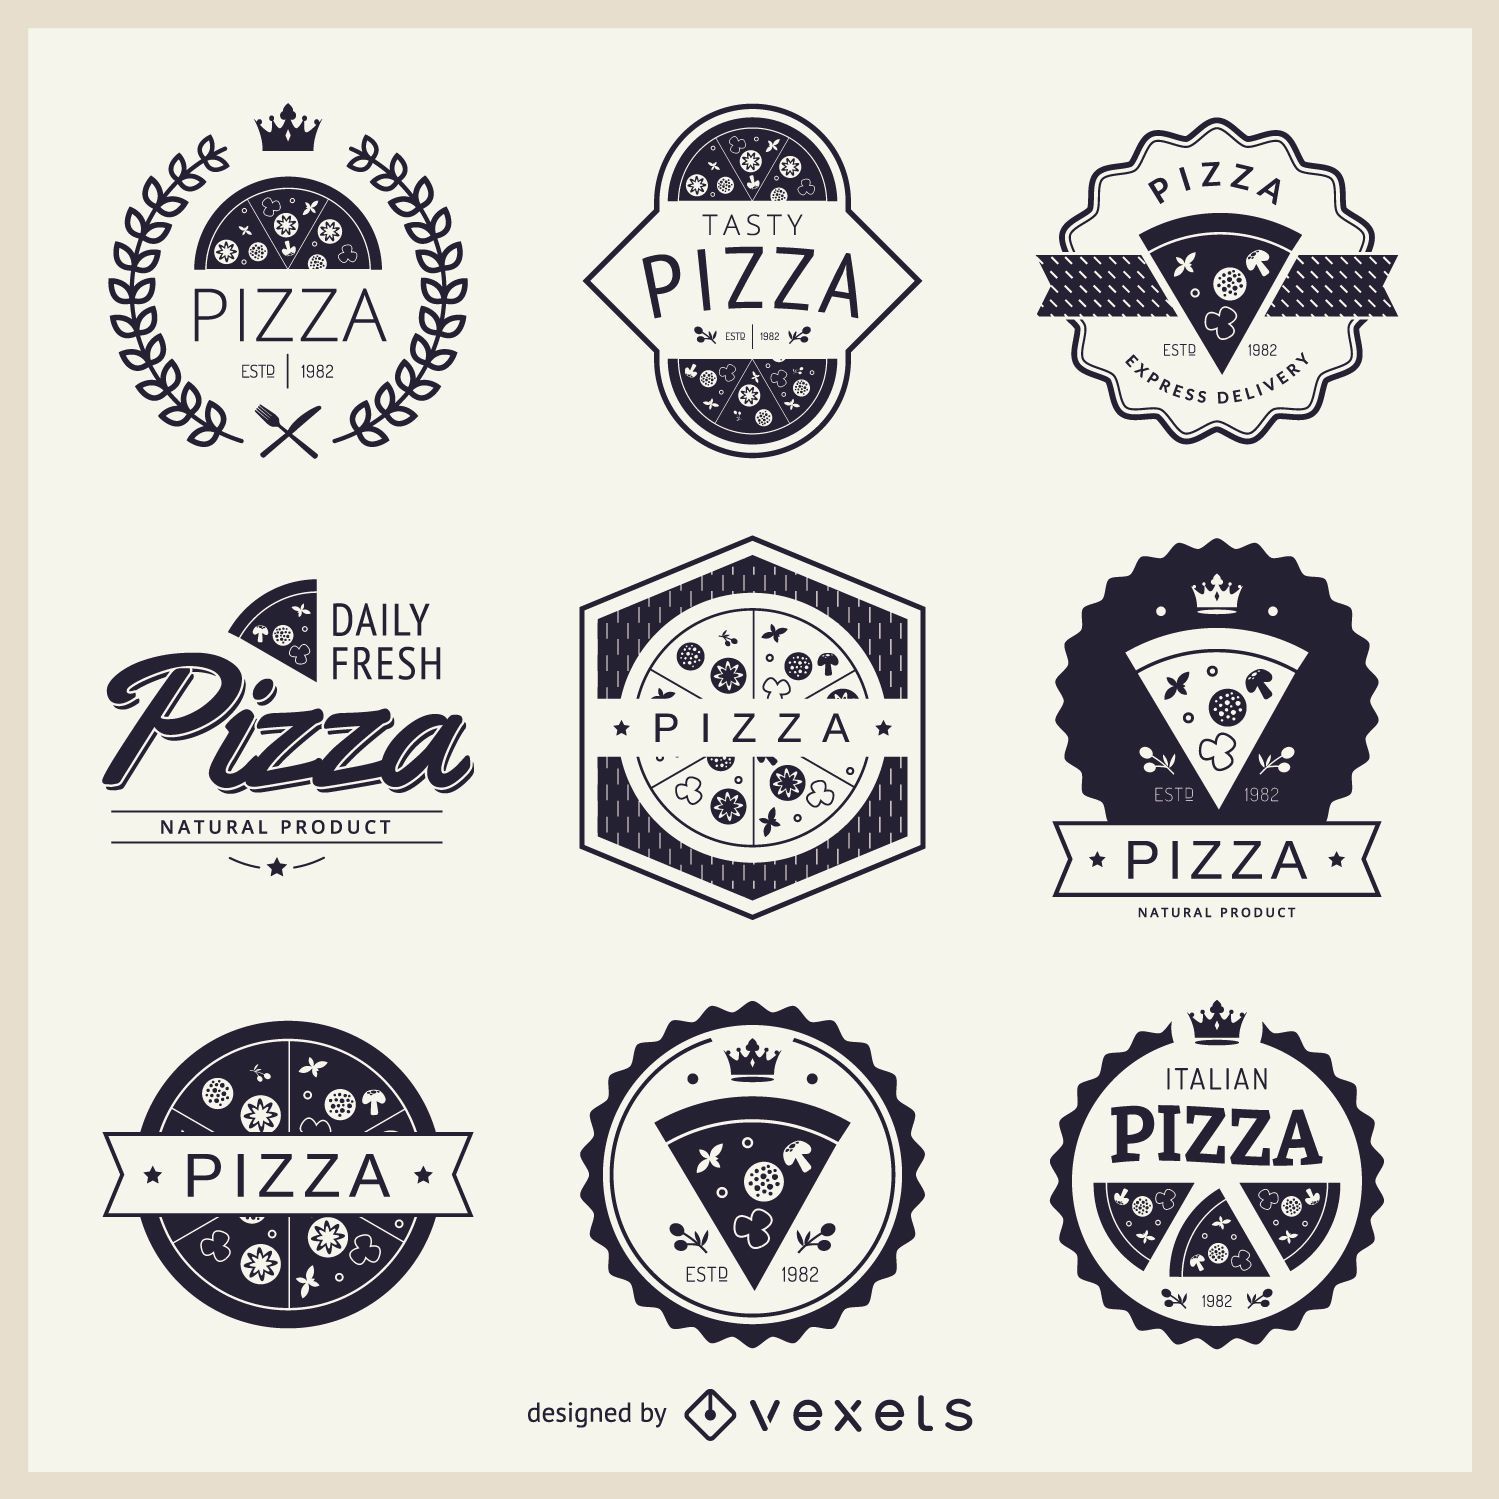 pizzeria logo ideas 6